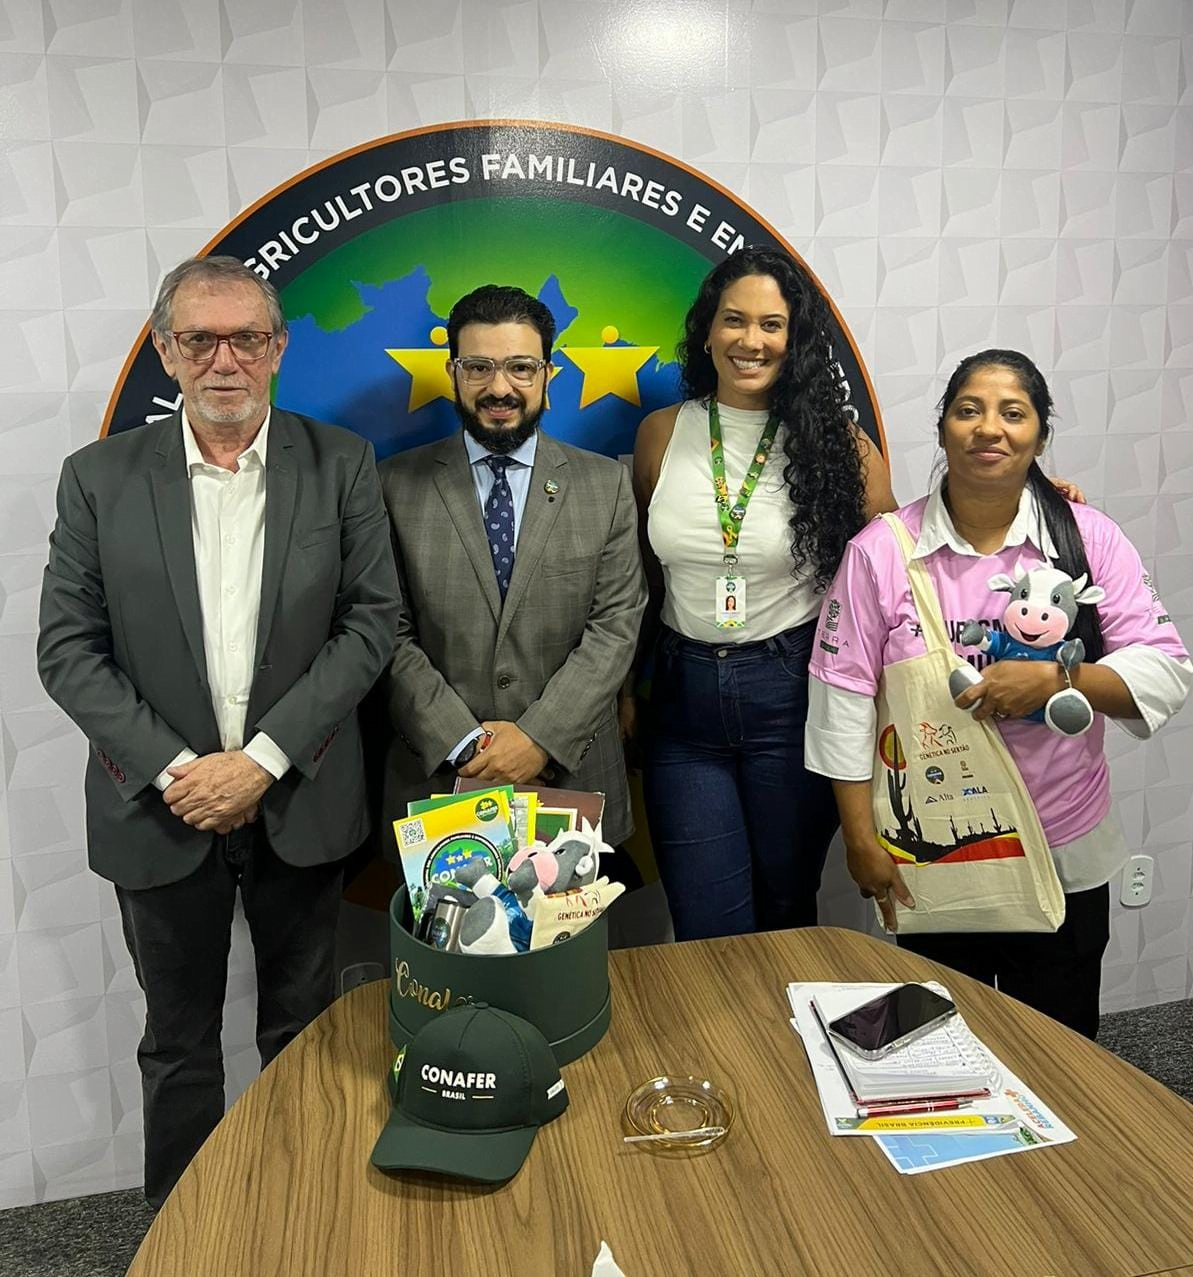 +PREVIDÊNCIA BRASIL: CONAFER apresenta seus projetos ao chefe da Divisão de Benefícios do INSS